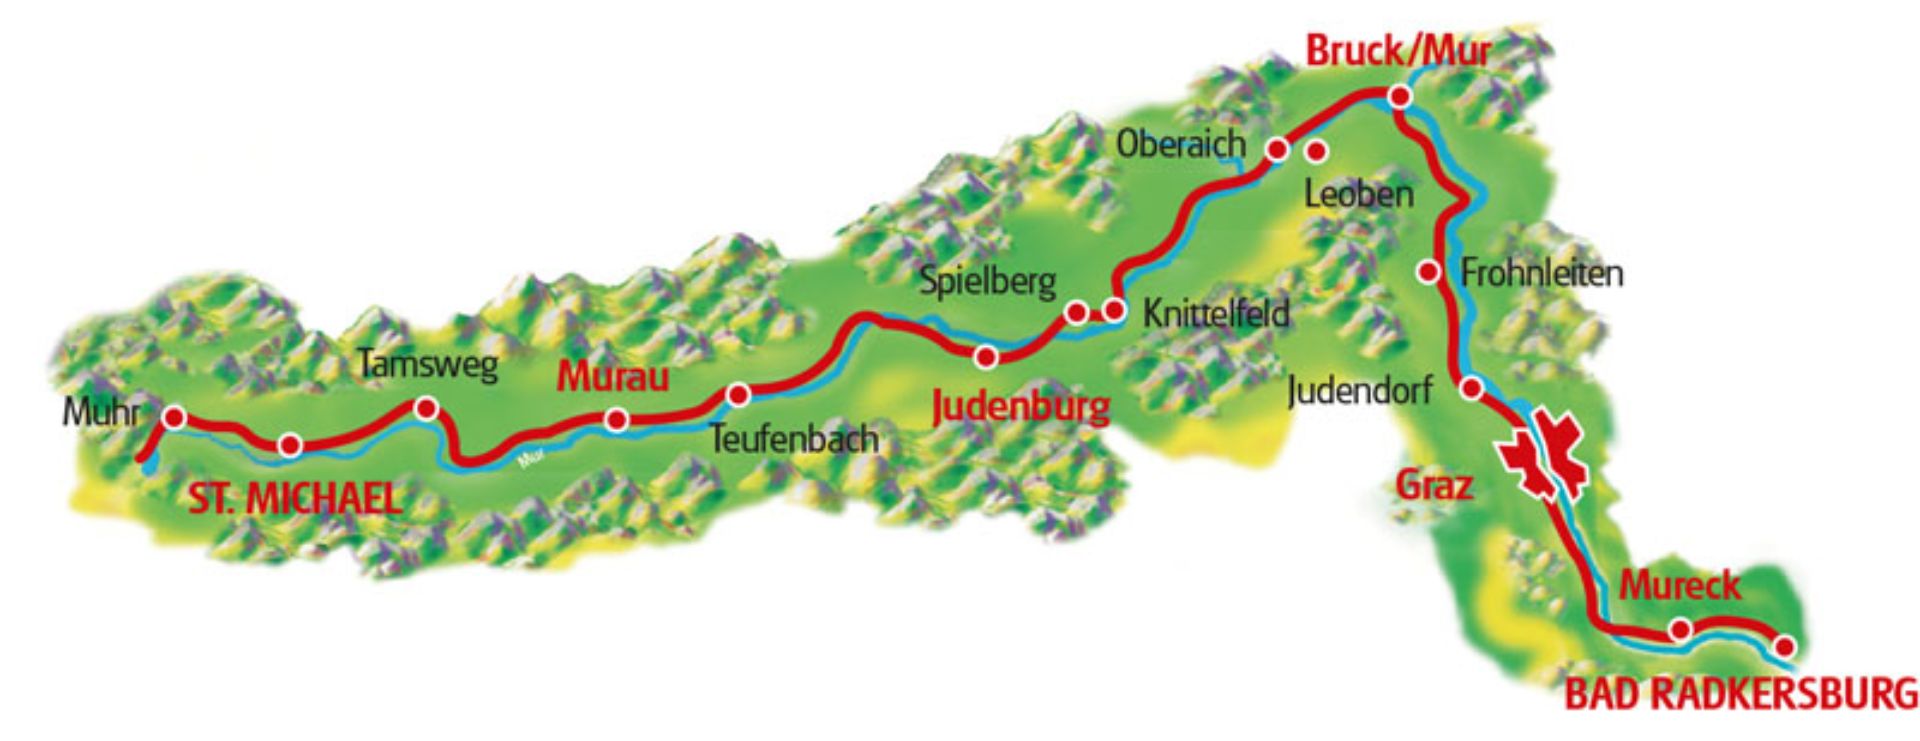 ルートマップ オーストリア ムールのサイクルパス6泊7日